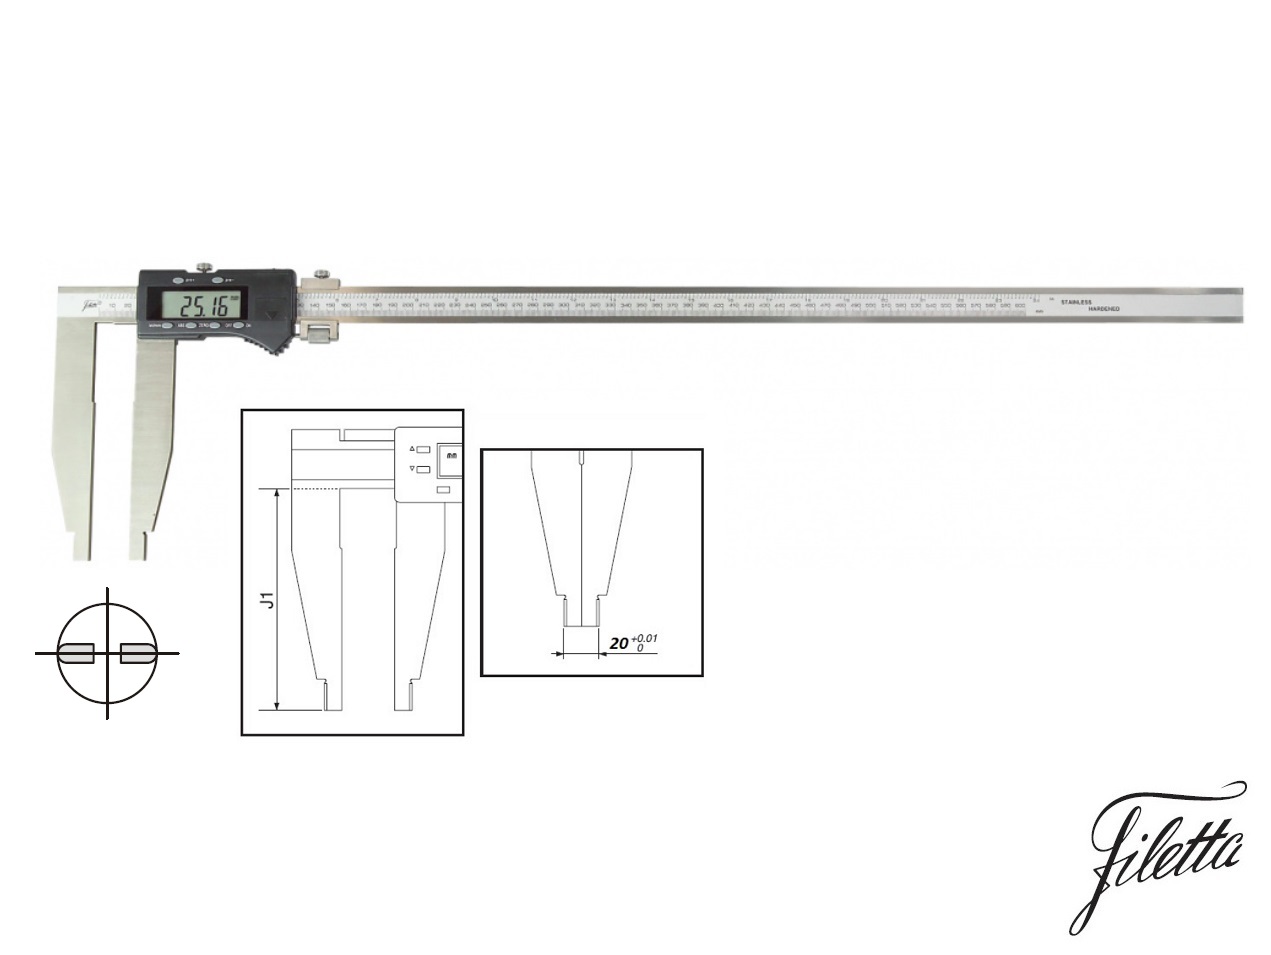 Digitální posuvné měřítko Filetta 0-2000 mm  bez nožíků, s měřicími čelistmi 200 mm